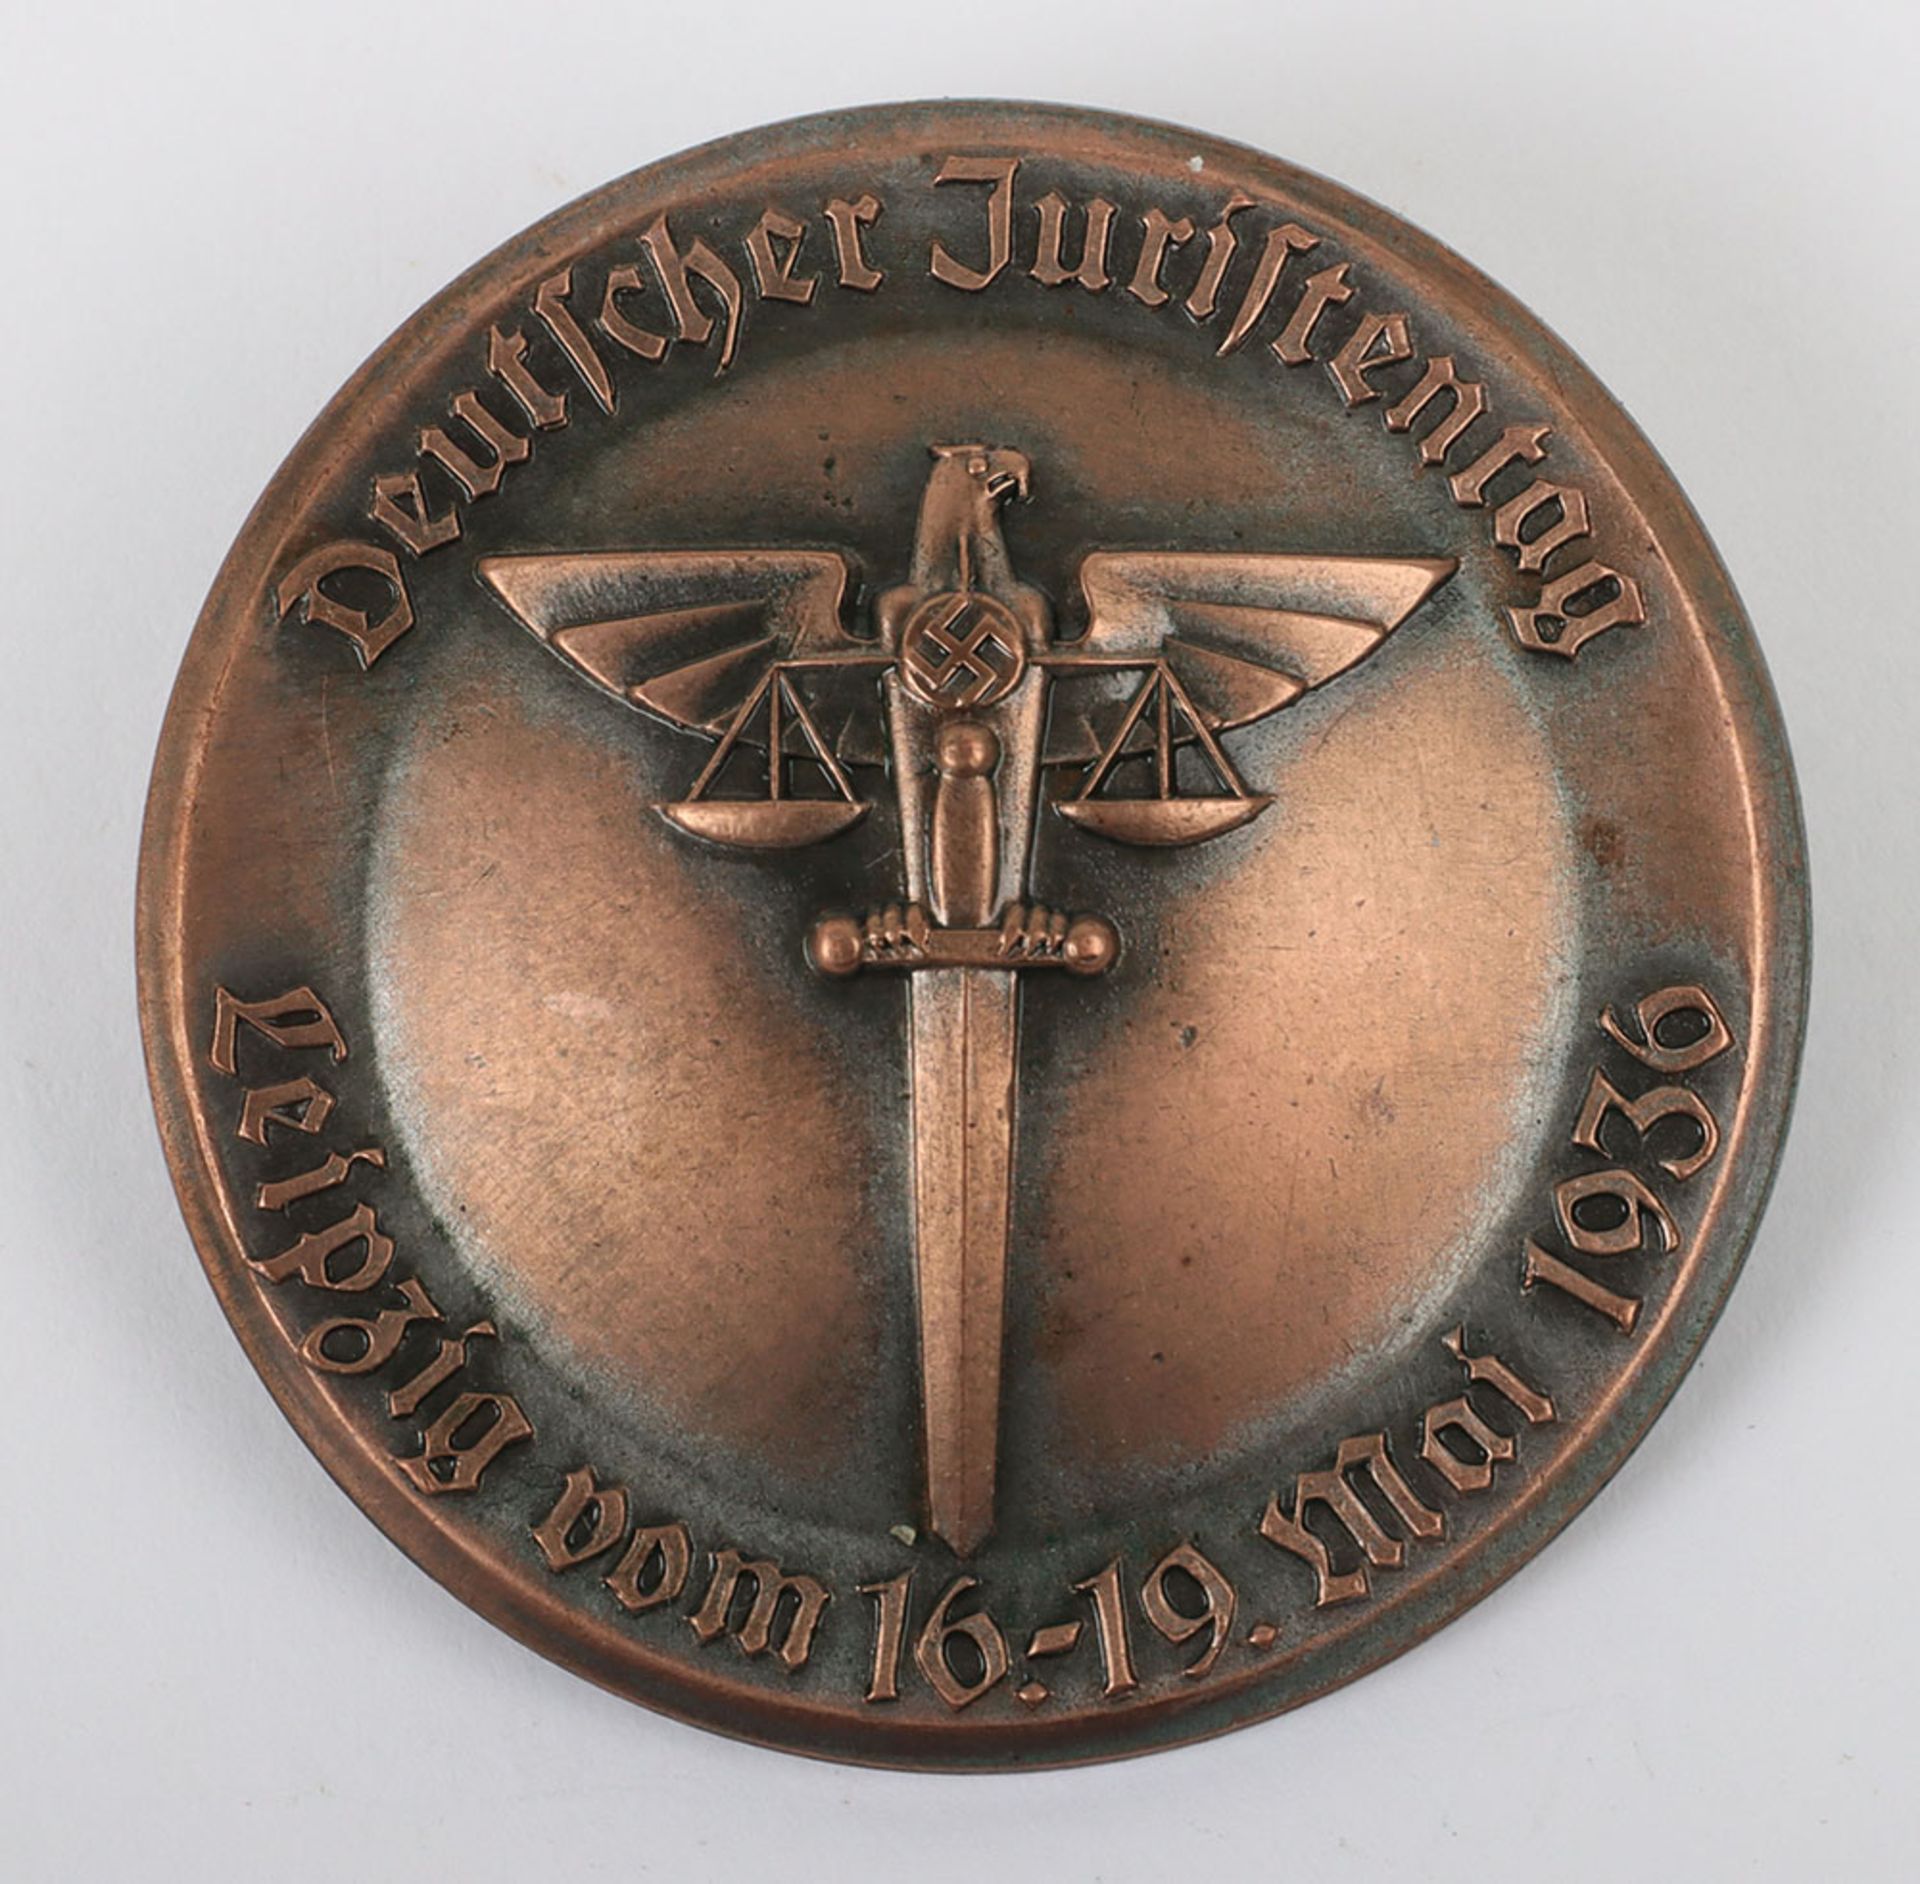 Third Reich Deutscher Juristentag Leipzig 1936 Day Badge - Image 2 of 3